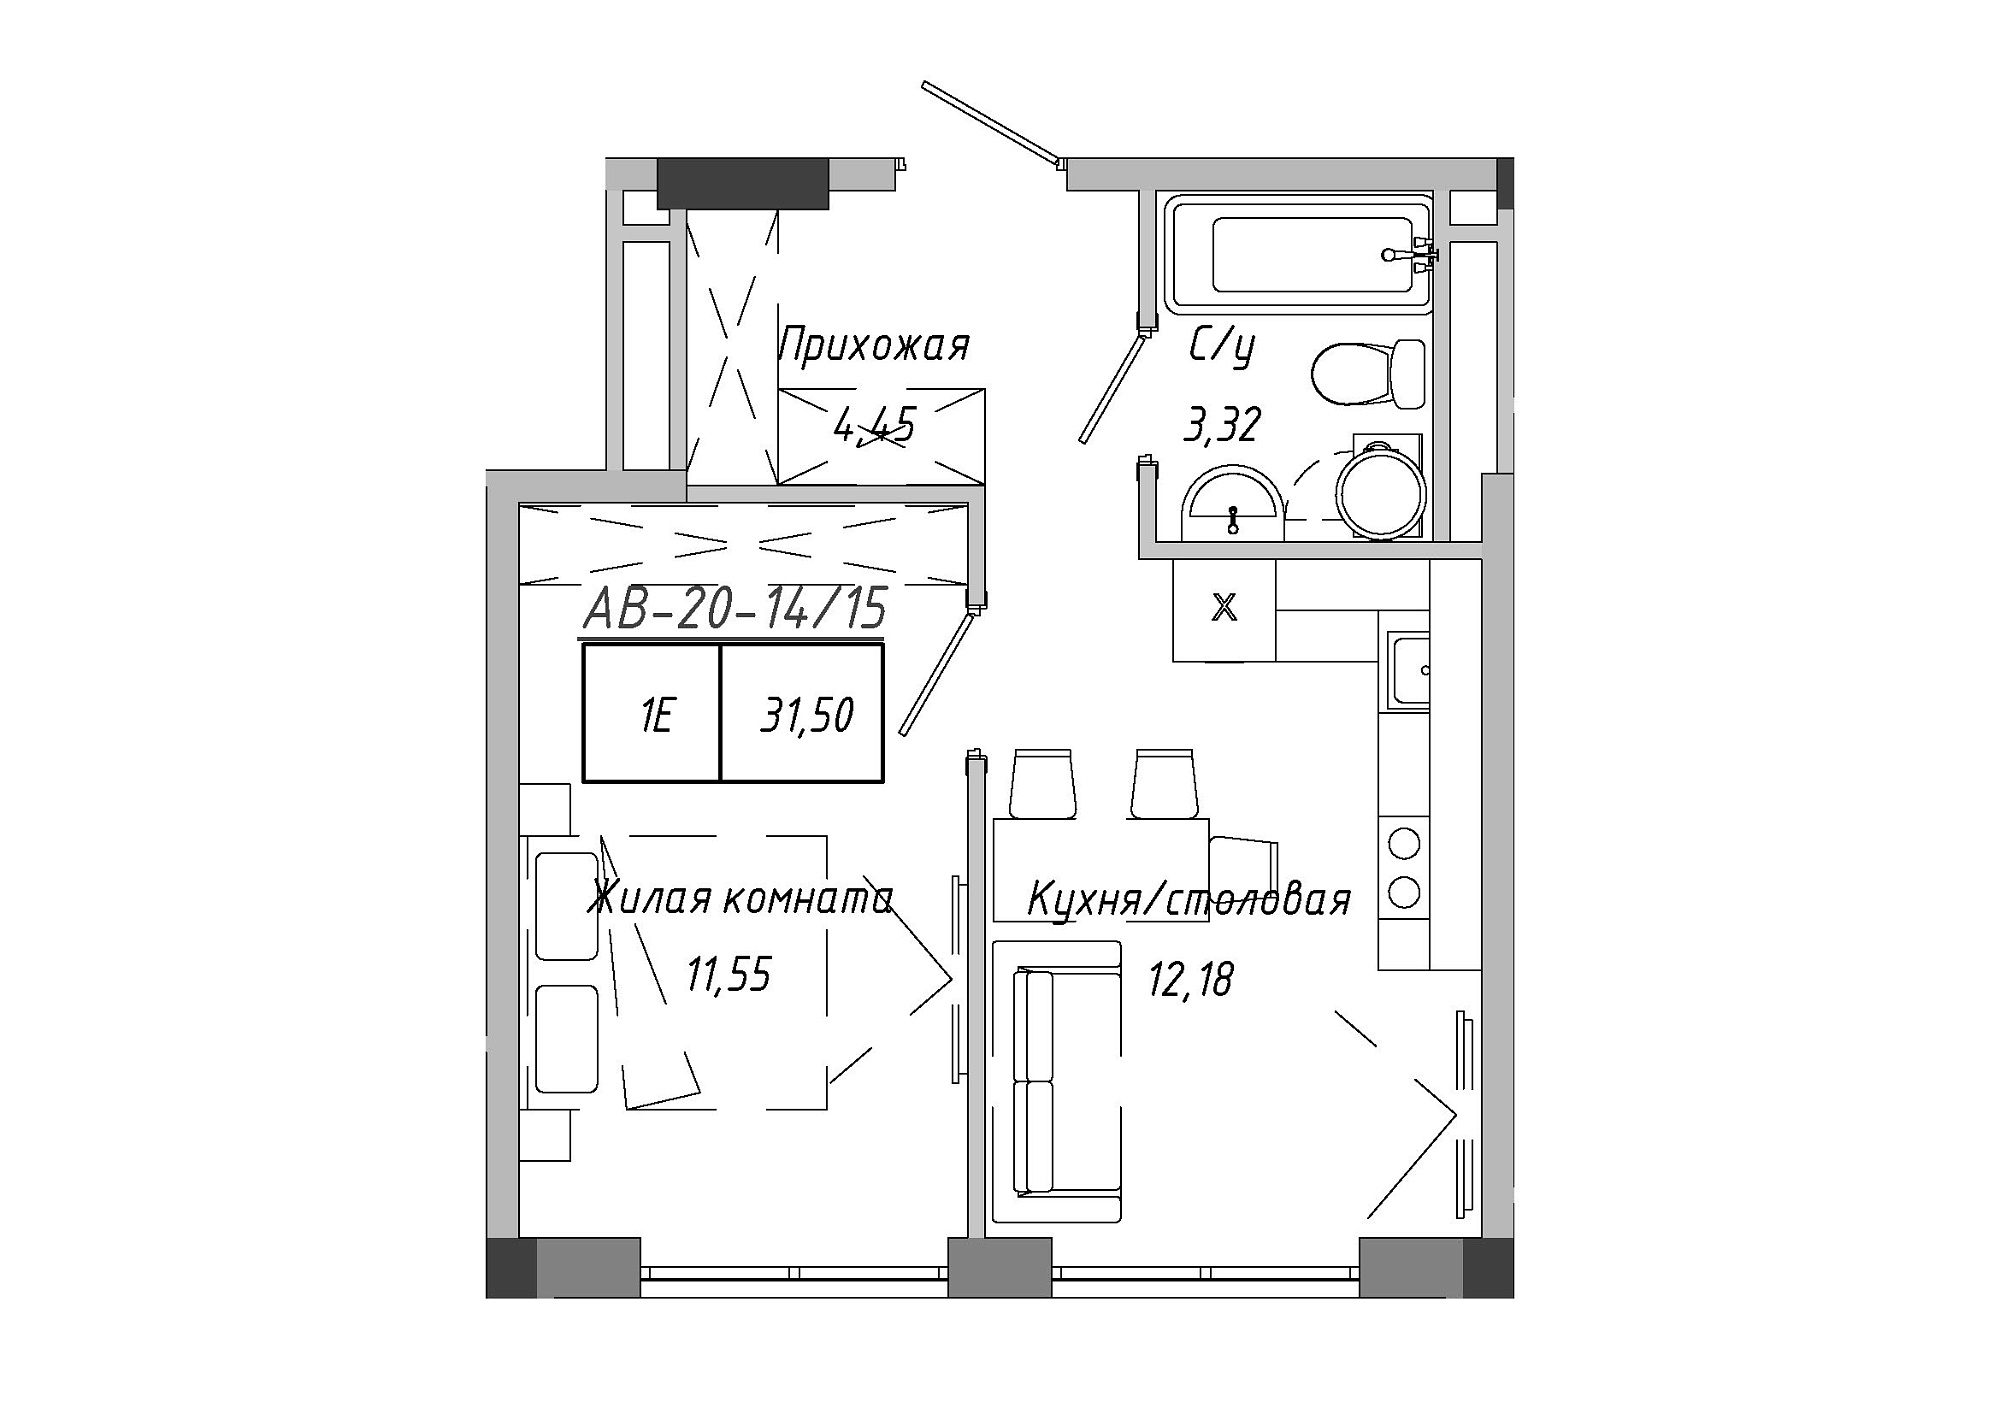 Планування 1-к квартира площею 31.5м2, AB-20-14/00115.